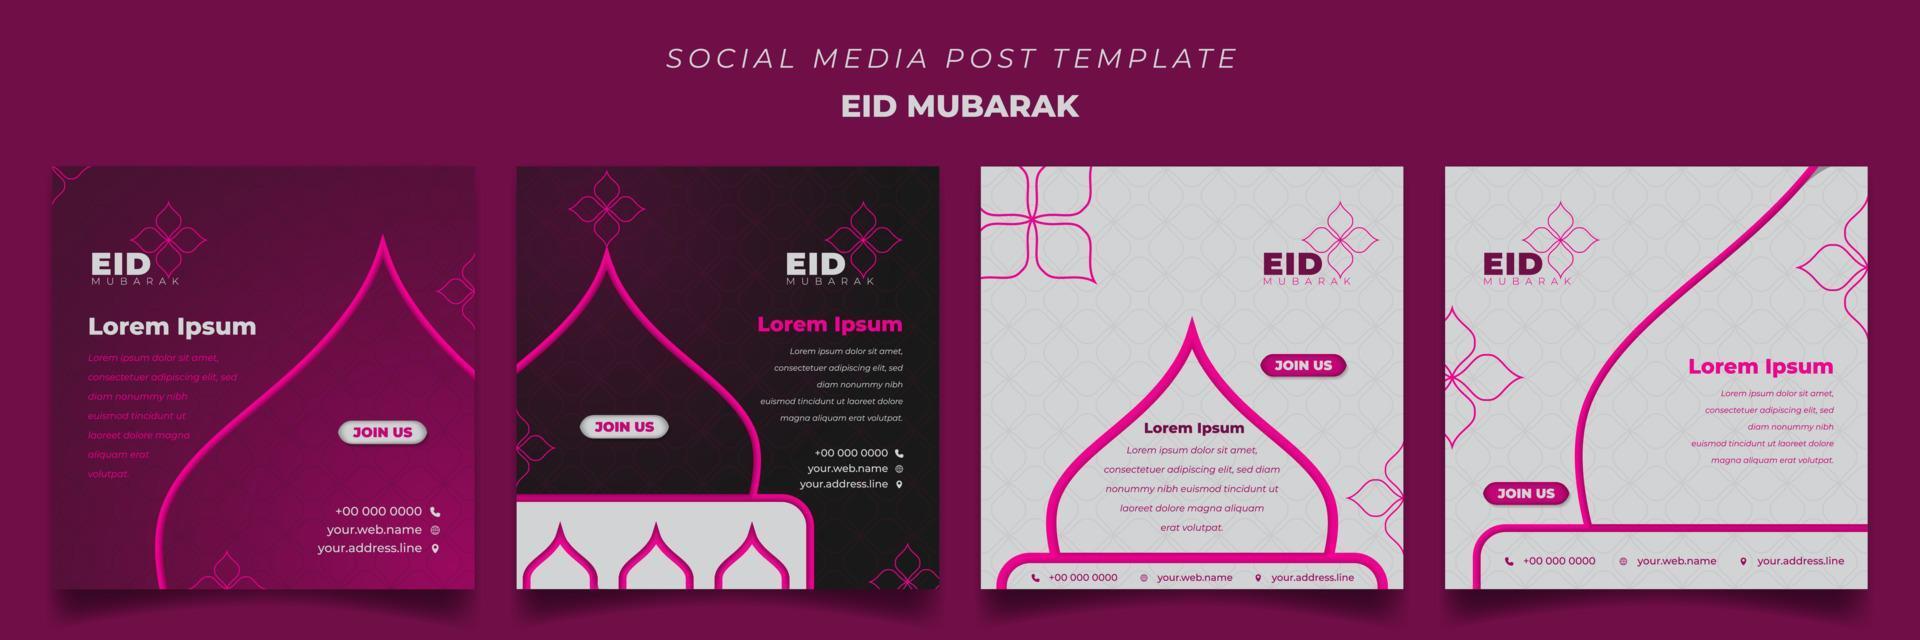 uppsättning av inläggsmall för sociala medier i fyrkantig bakgrund med feminin design för eid mubarak vektor